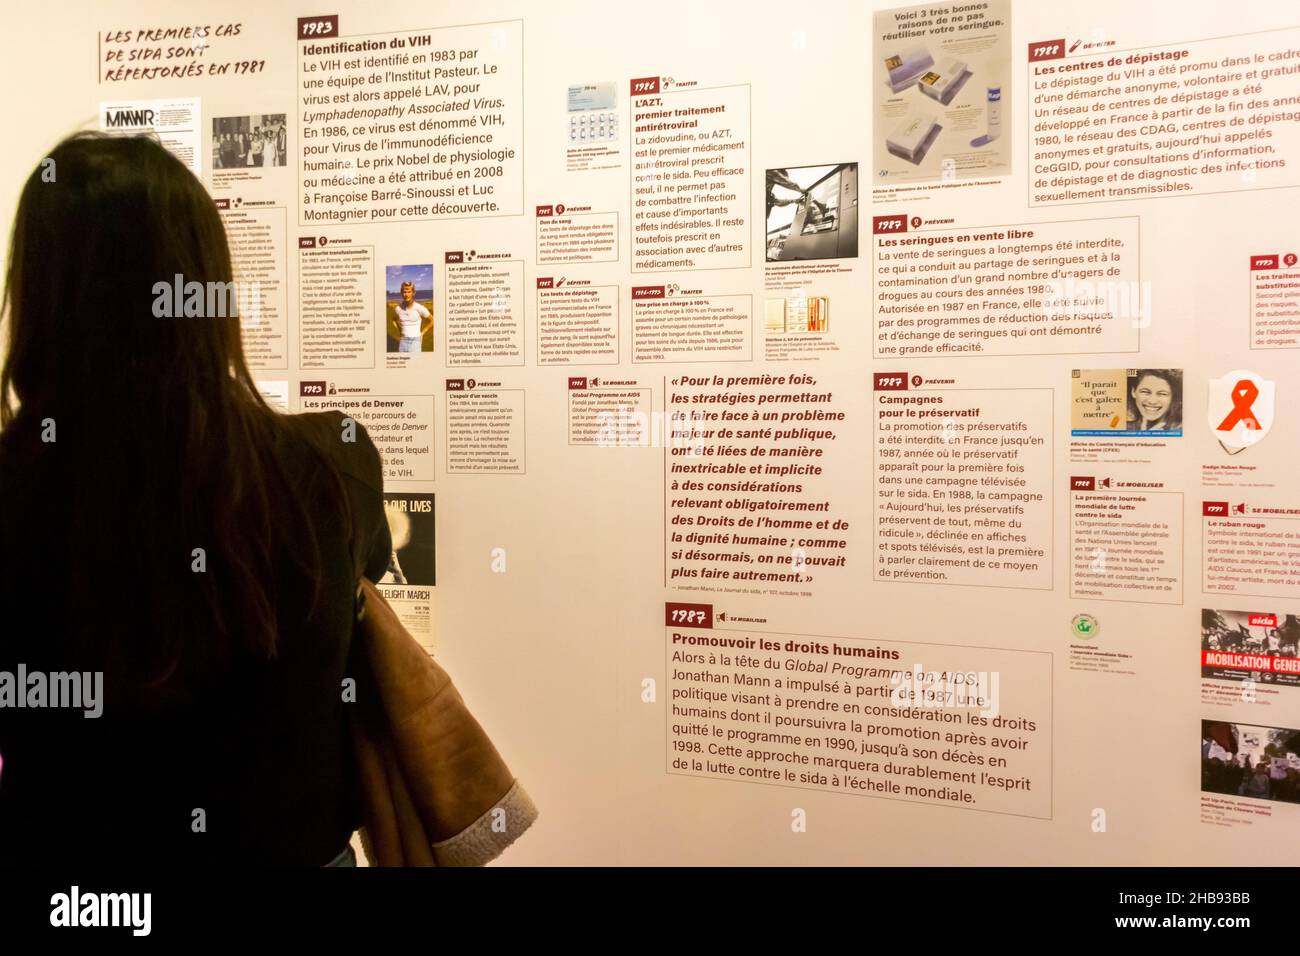 Marseille, Frankreich, MUCEM-Museumsausstellung, Geschichte von AIDS, 'VIH/SIDA, L'epidemie n'est pas finie!' (Die AIDS-Epidemie ist noch nicht vorbei!) AIDS History Exhibition, Teen Girl Lesebeschreibung an der Wand Stockfoto